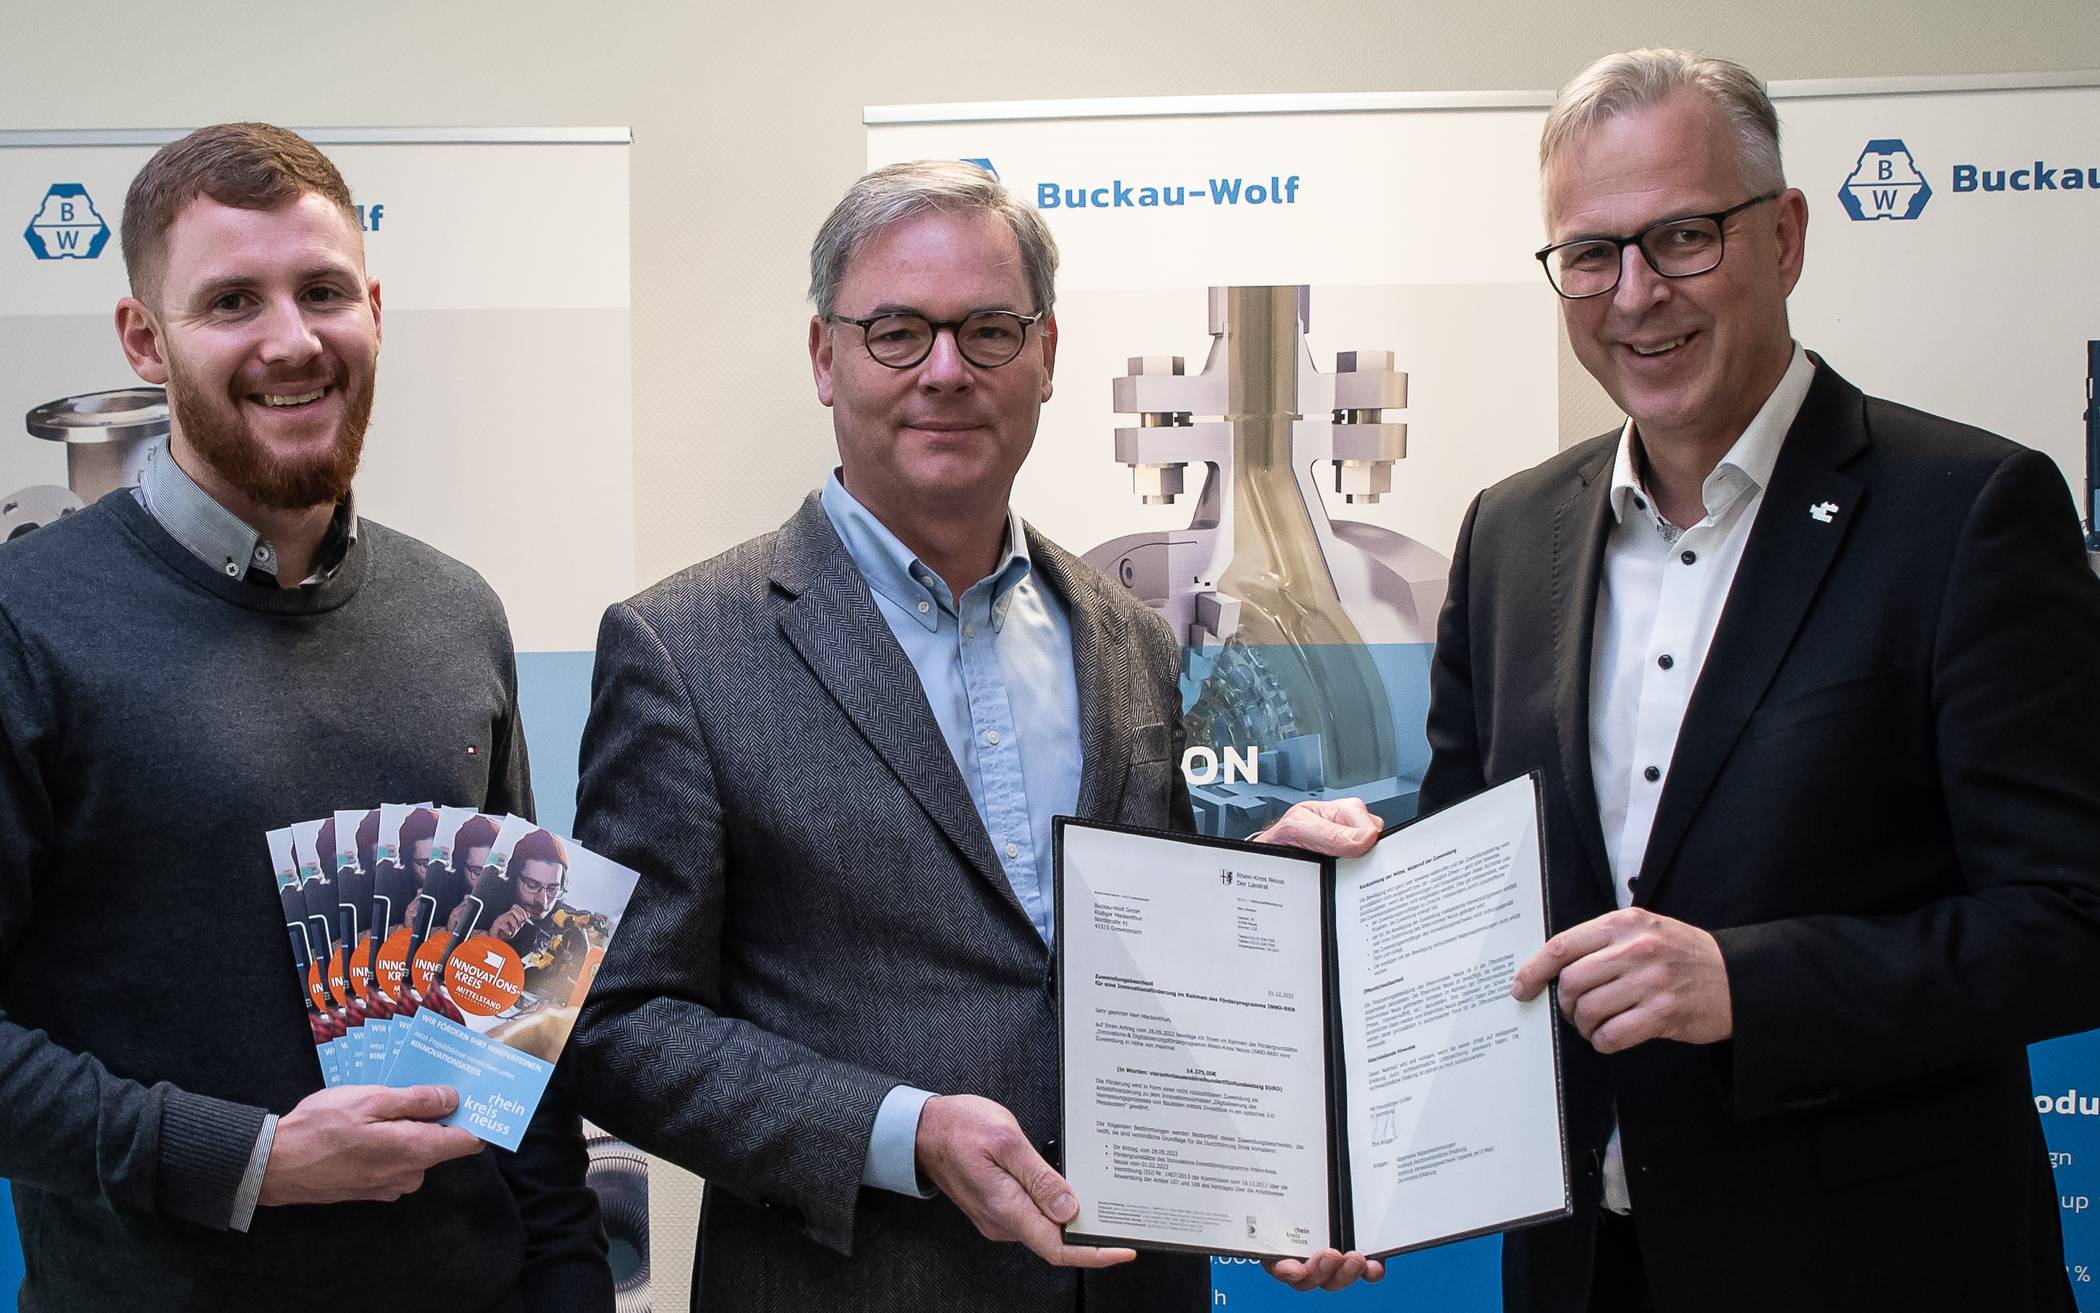  Zuschuss aus dem Innovationsförderprogramm INNO-RKN an "Buckau-Wolf" (von links): Dominik Hintzen, Rüdiger Mackenthun und Kreisdirektor Dirk Brügge. 